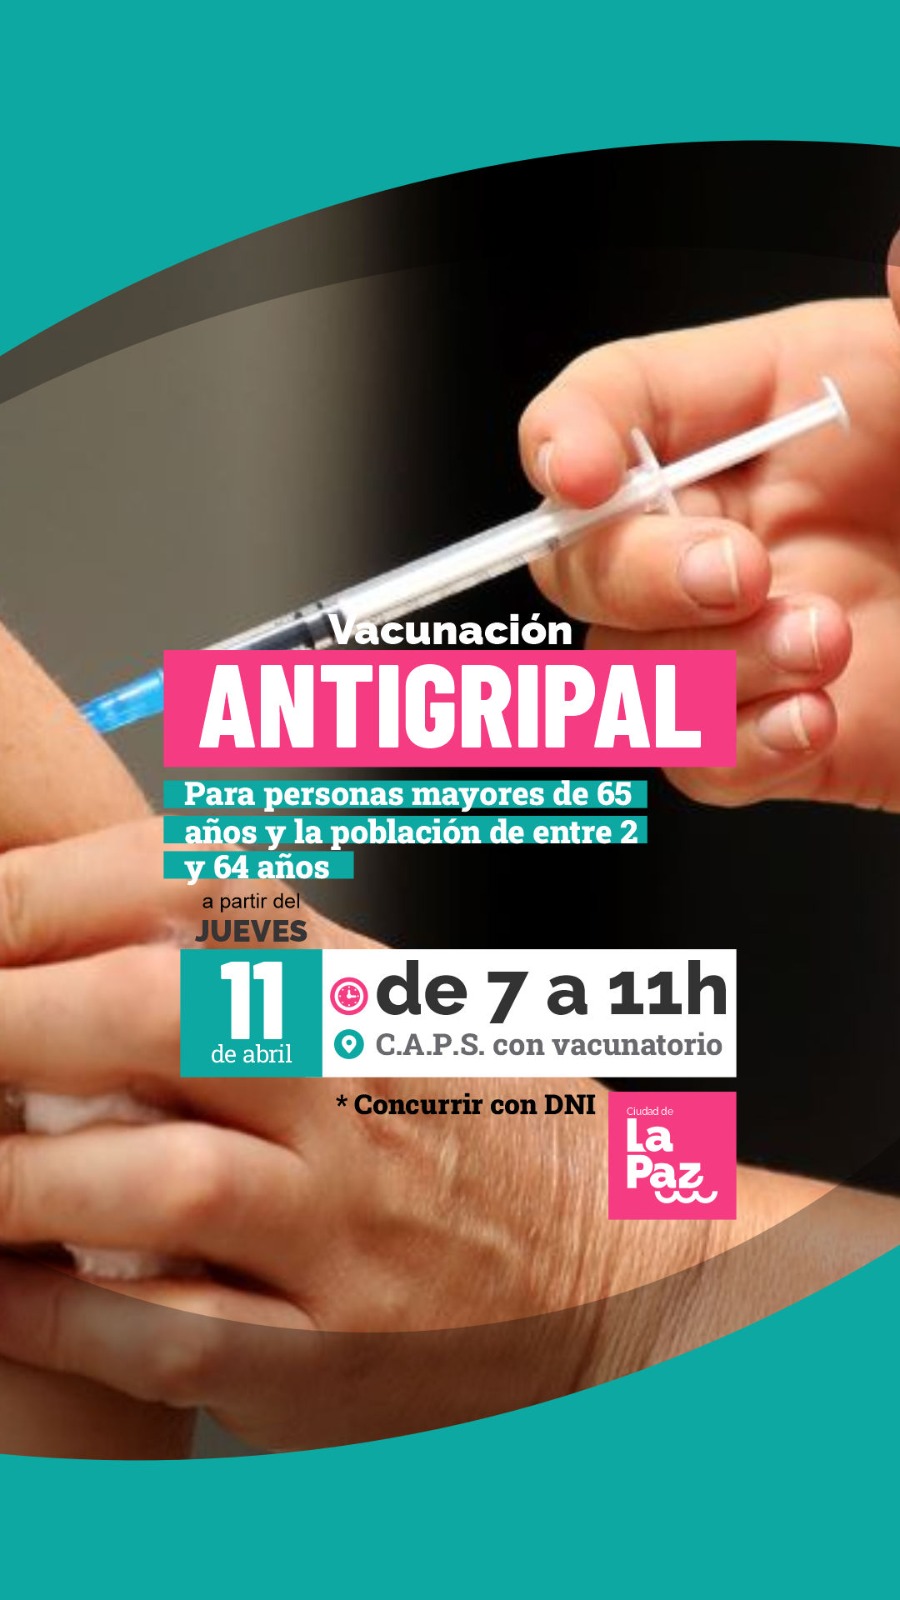 Este jueves continúa la campaña de vacunación antigripal en vacunatorios municipales.